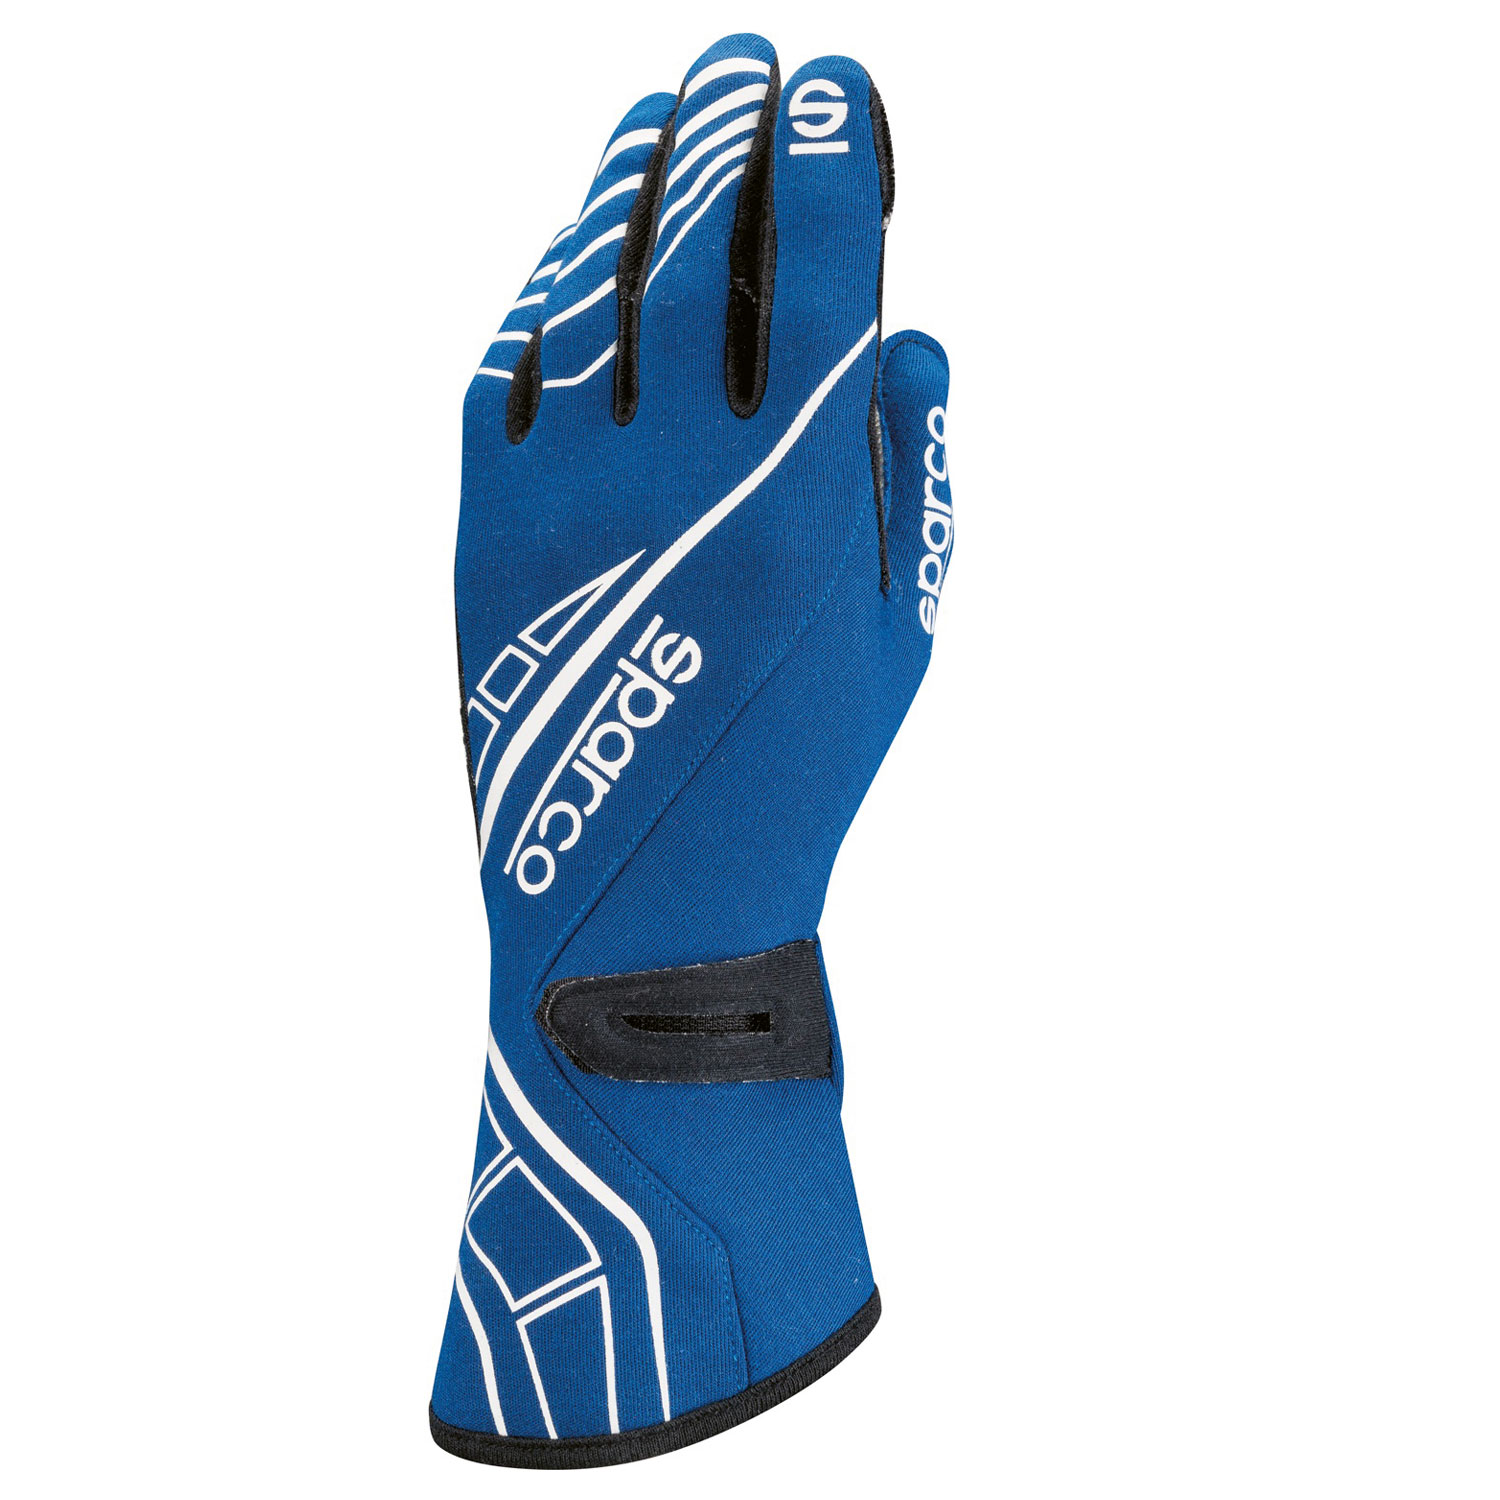 Sparco Handschuh Lap RG-5, blau